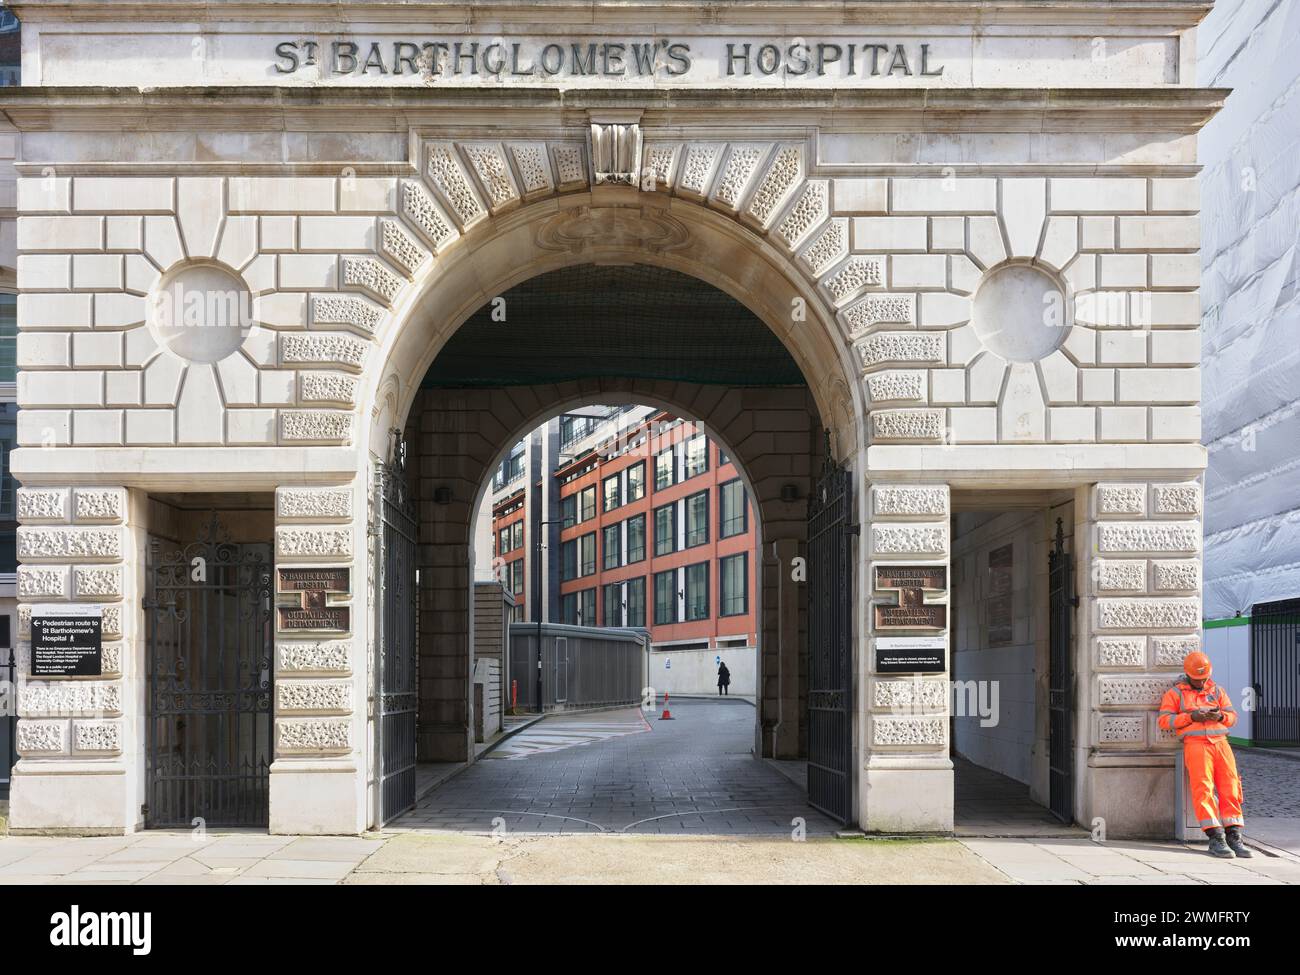 St Bartholomew's (Barts) hospital, London, England. Stock Photo